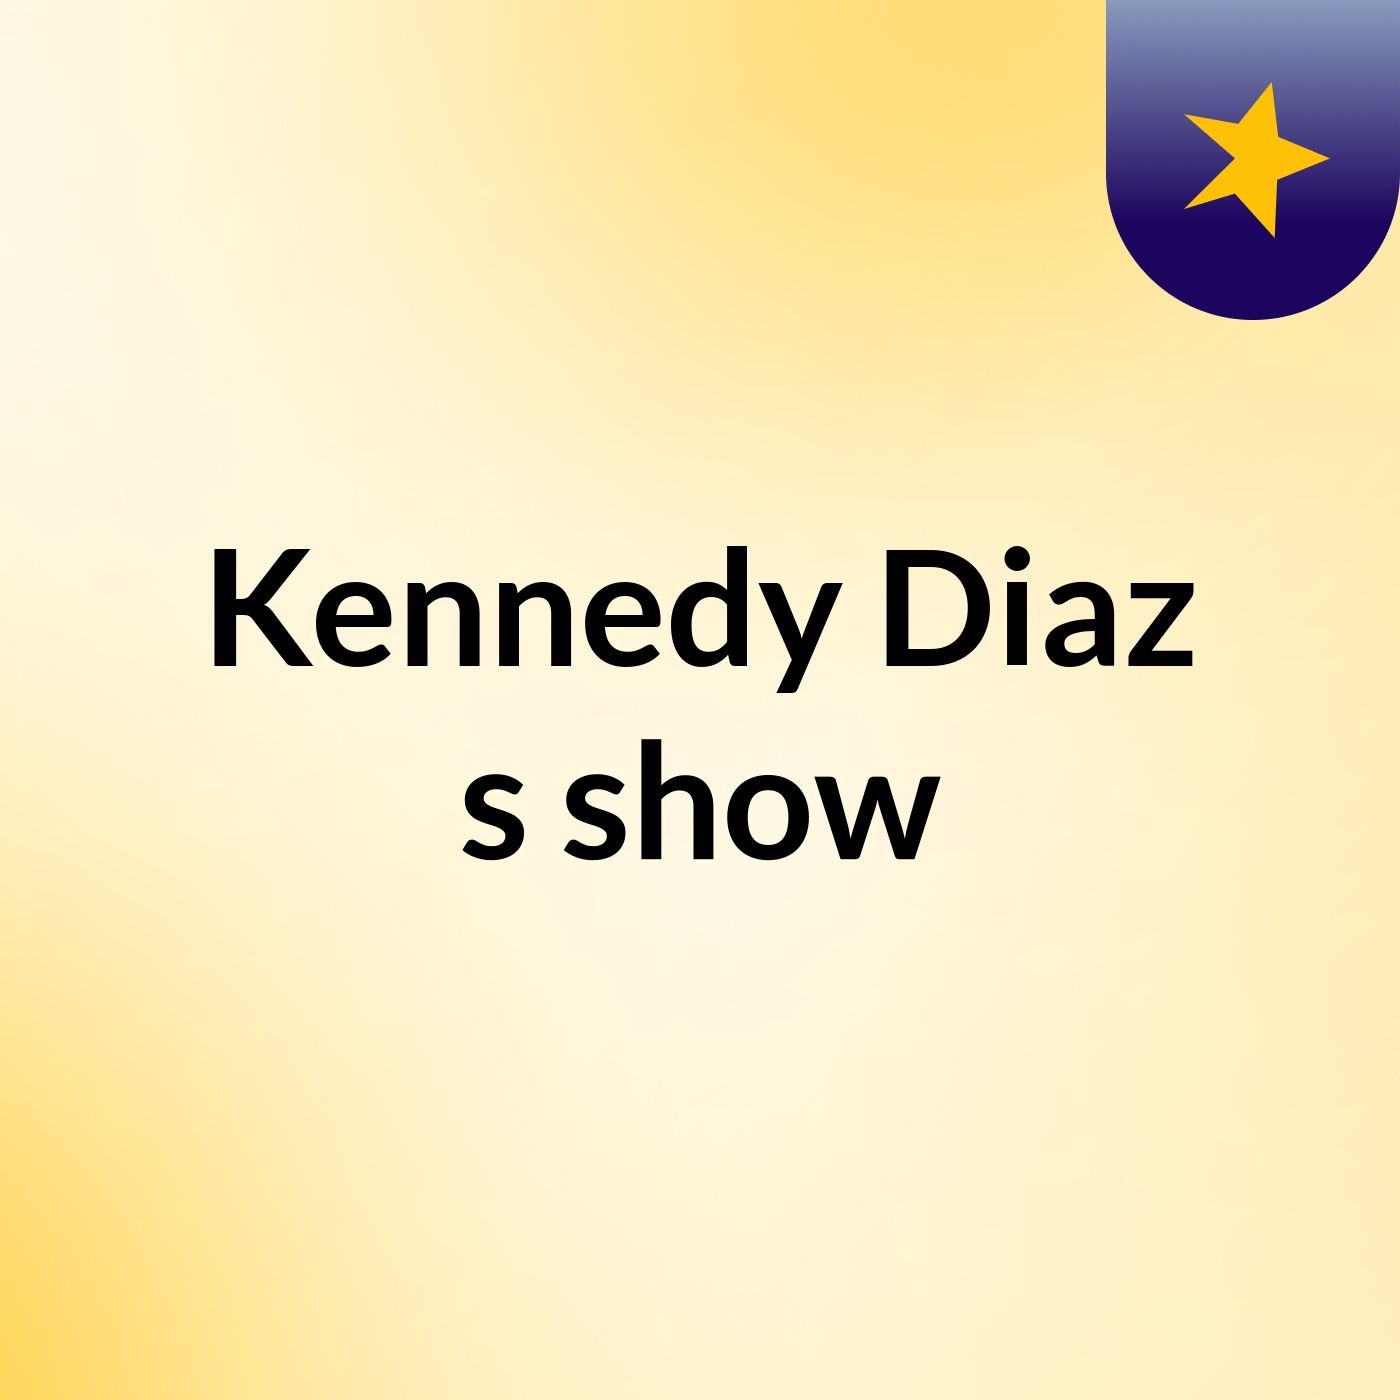 Kennedy Diaz's show